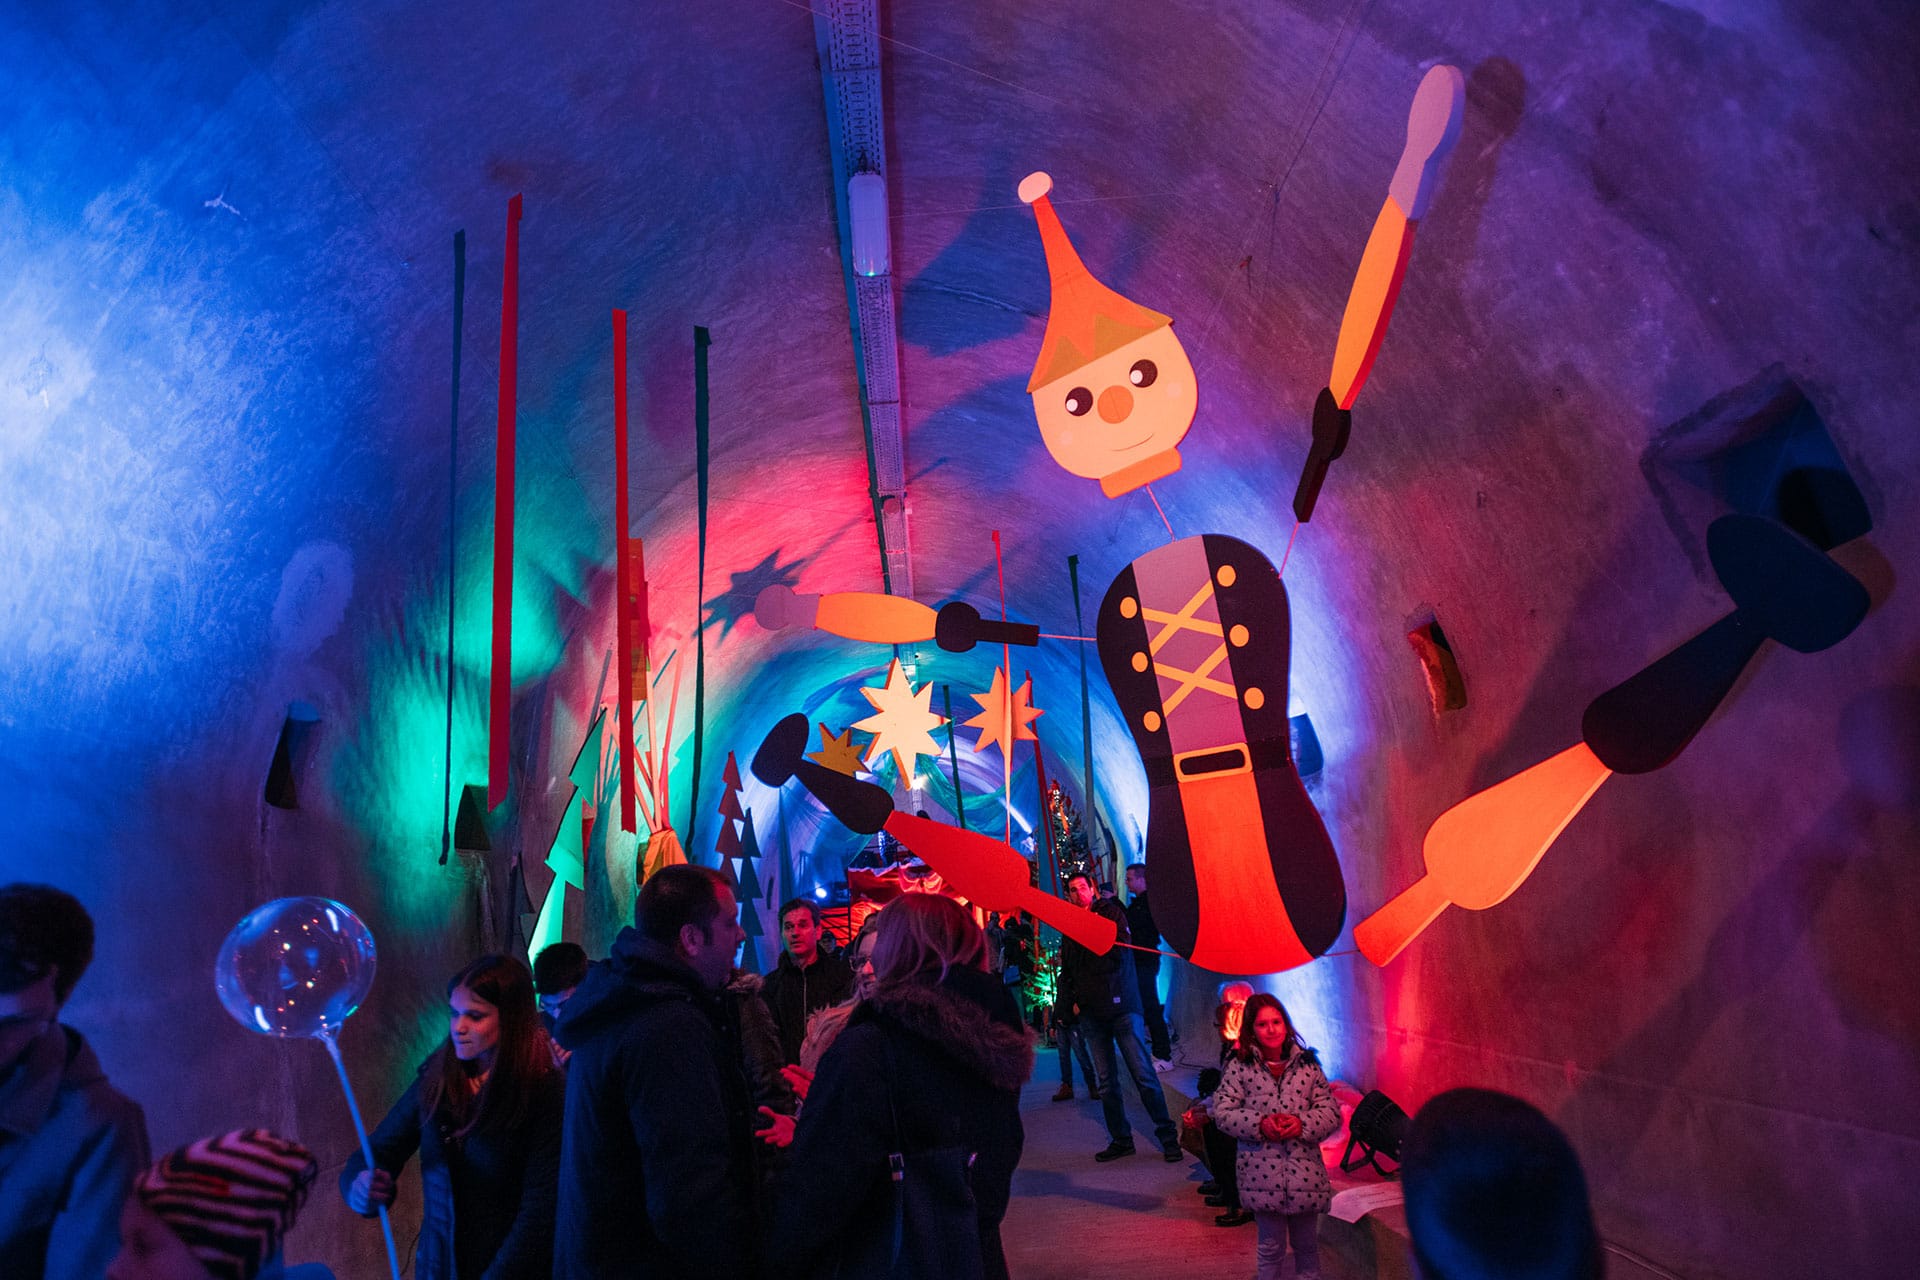 Advent im Grič-Tunnel: Hier wird jedes Jahr ein neues multimediales Weihnachtsmärchen erzählt mit Musik in einer einzigartigen Tunnel-Akustik.